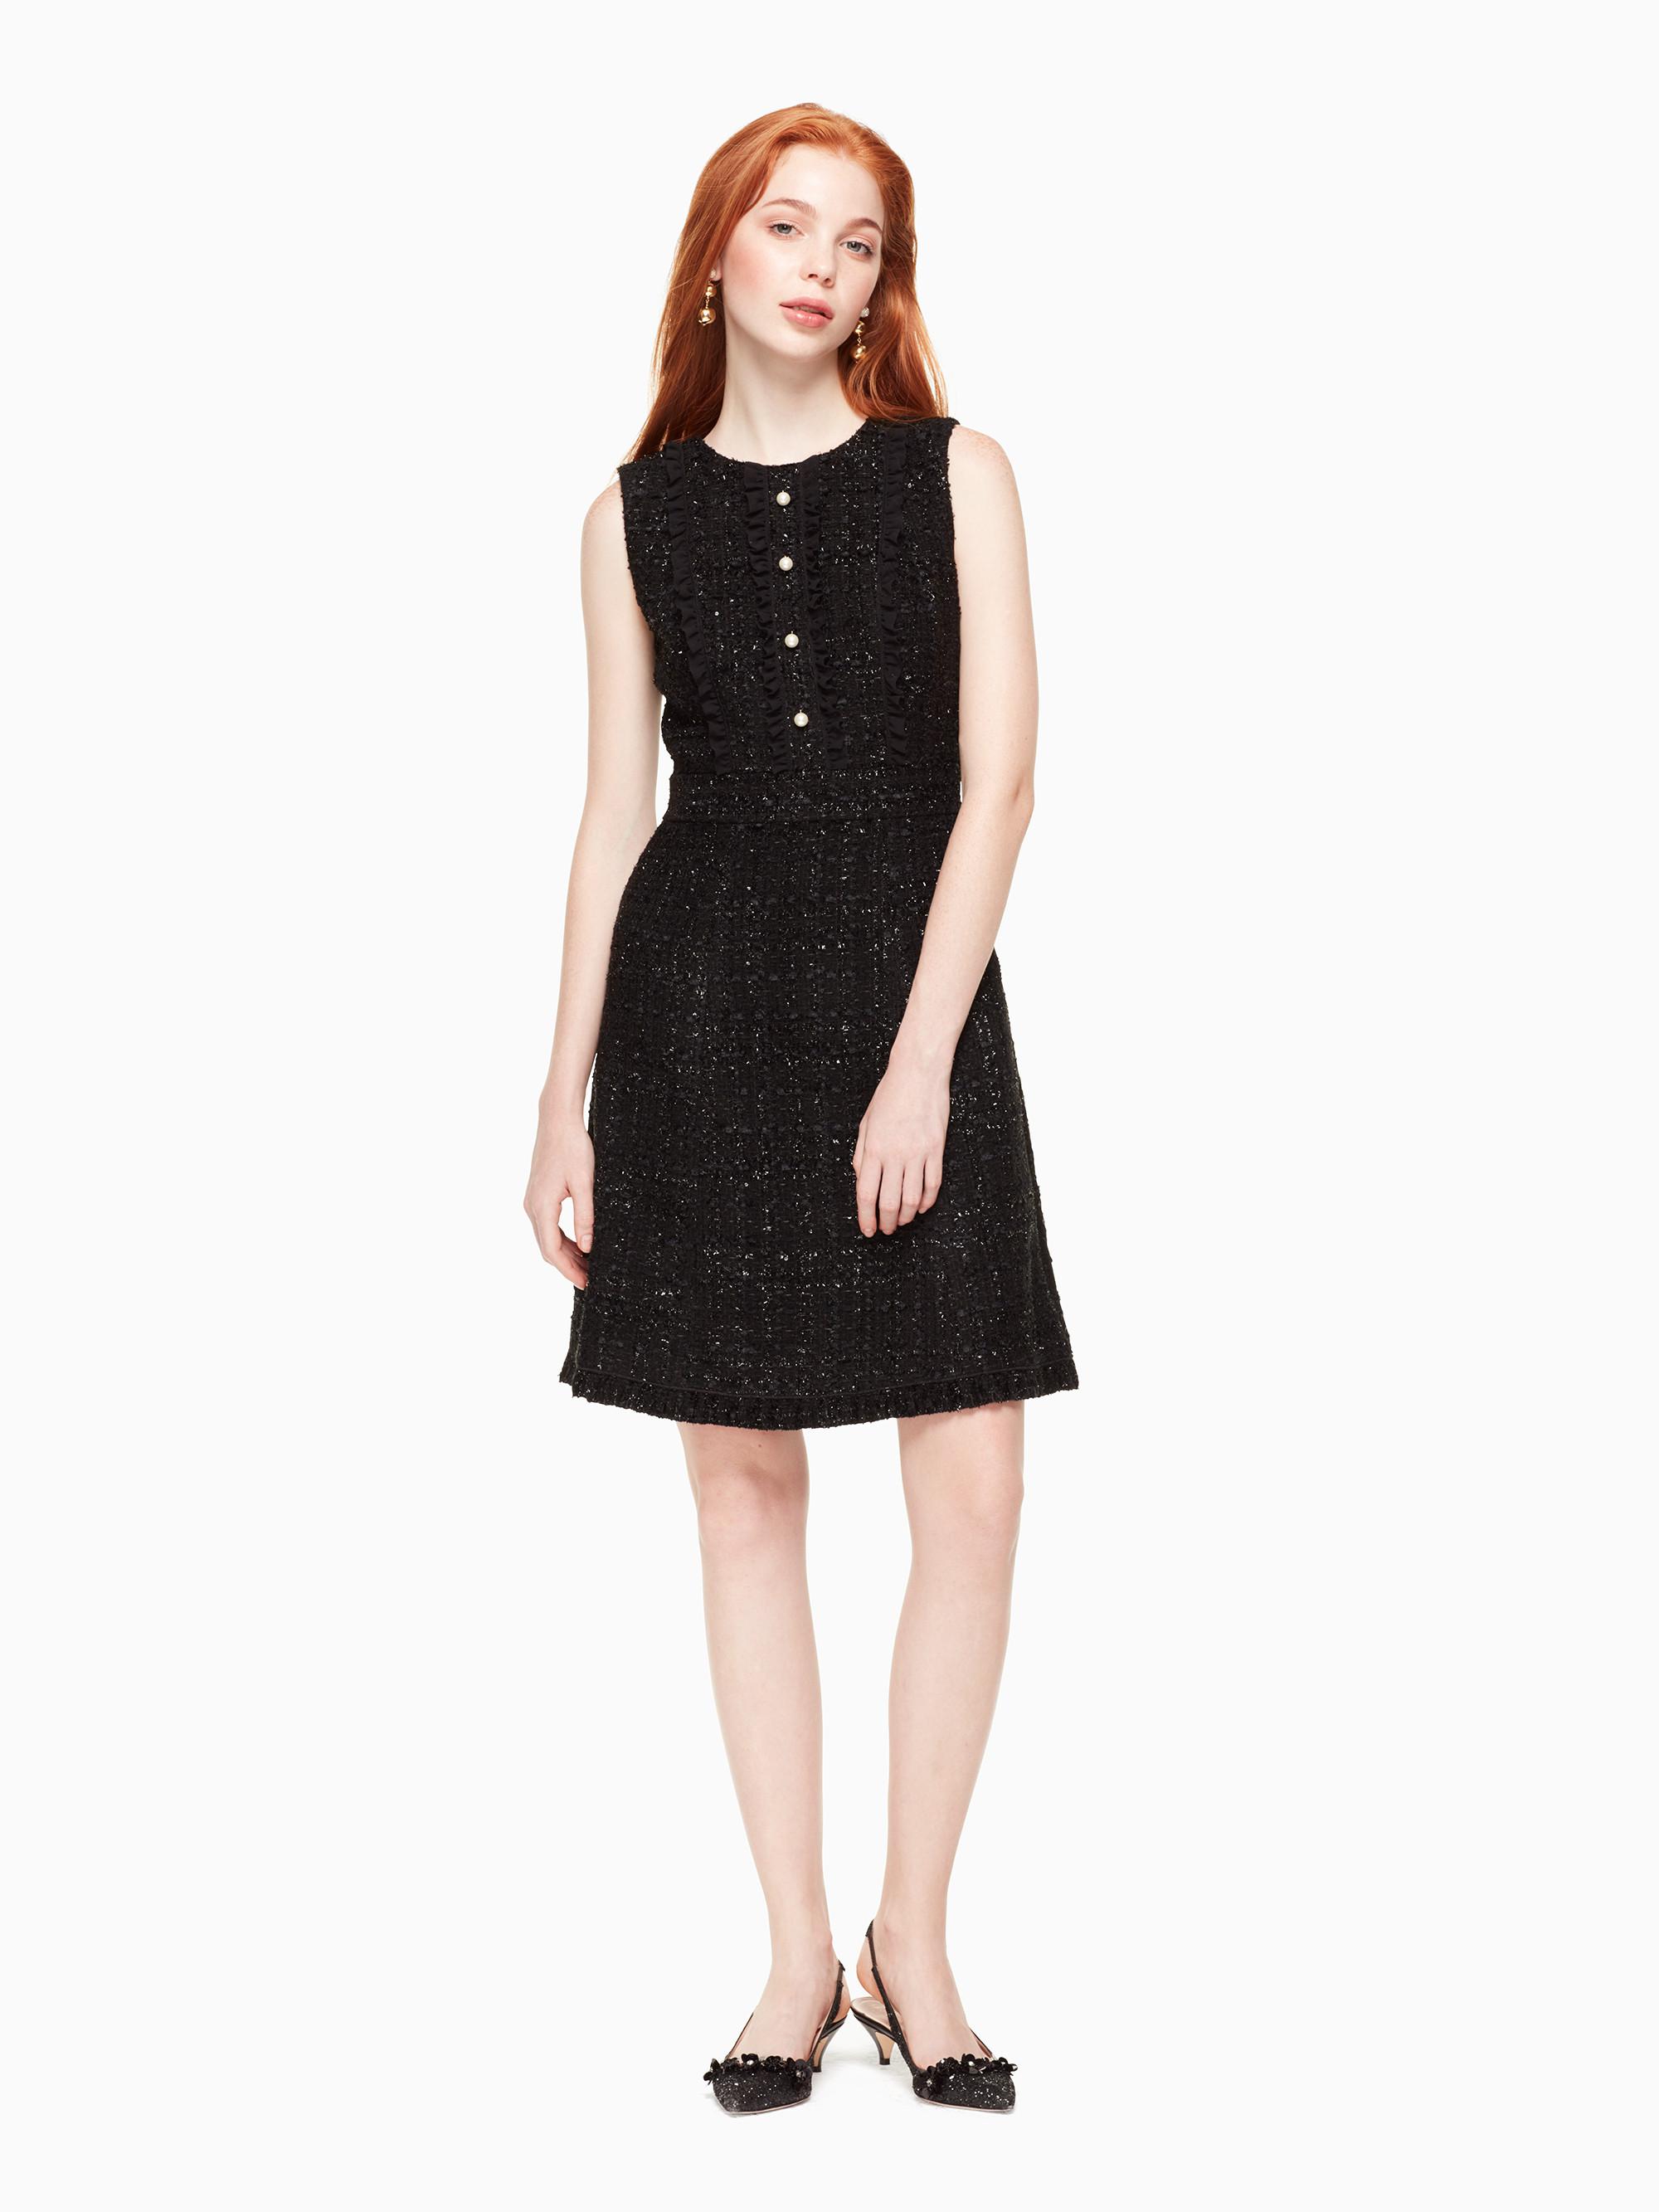 Kate Spade Sparkle Tweed Dress in Black - Lyst